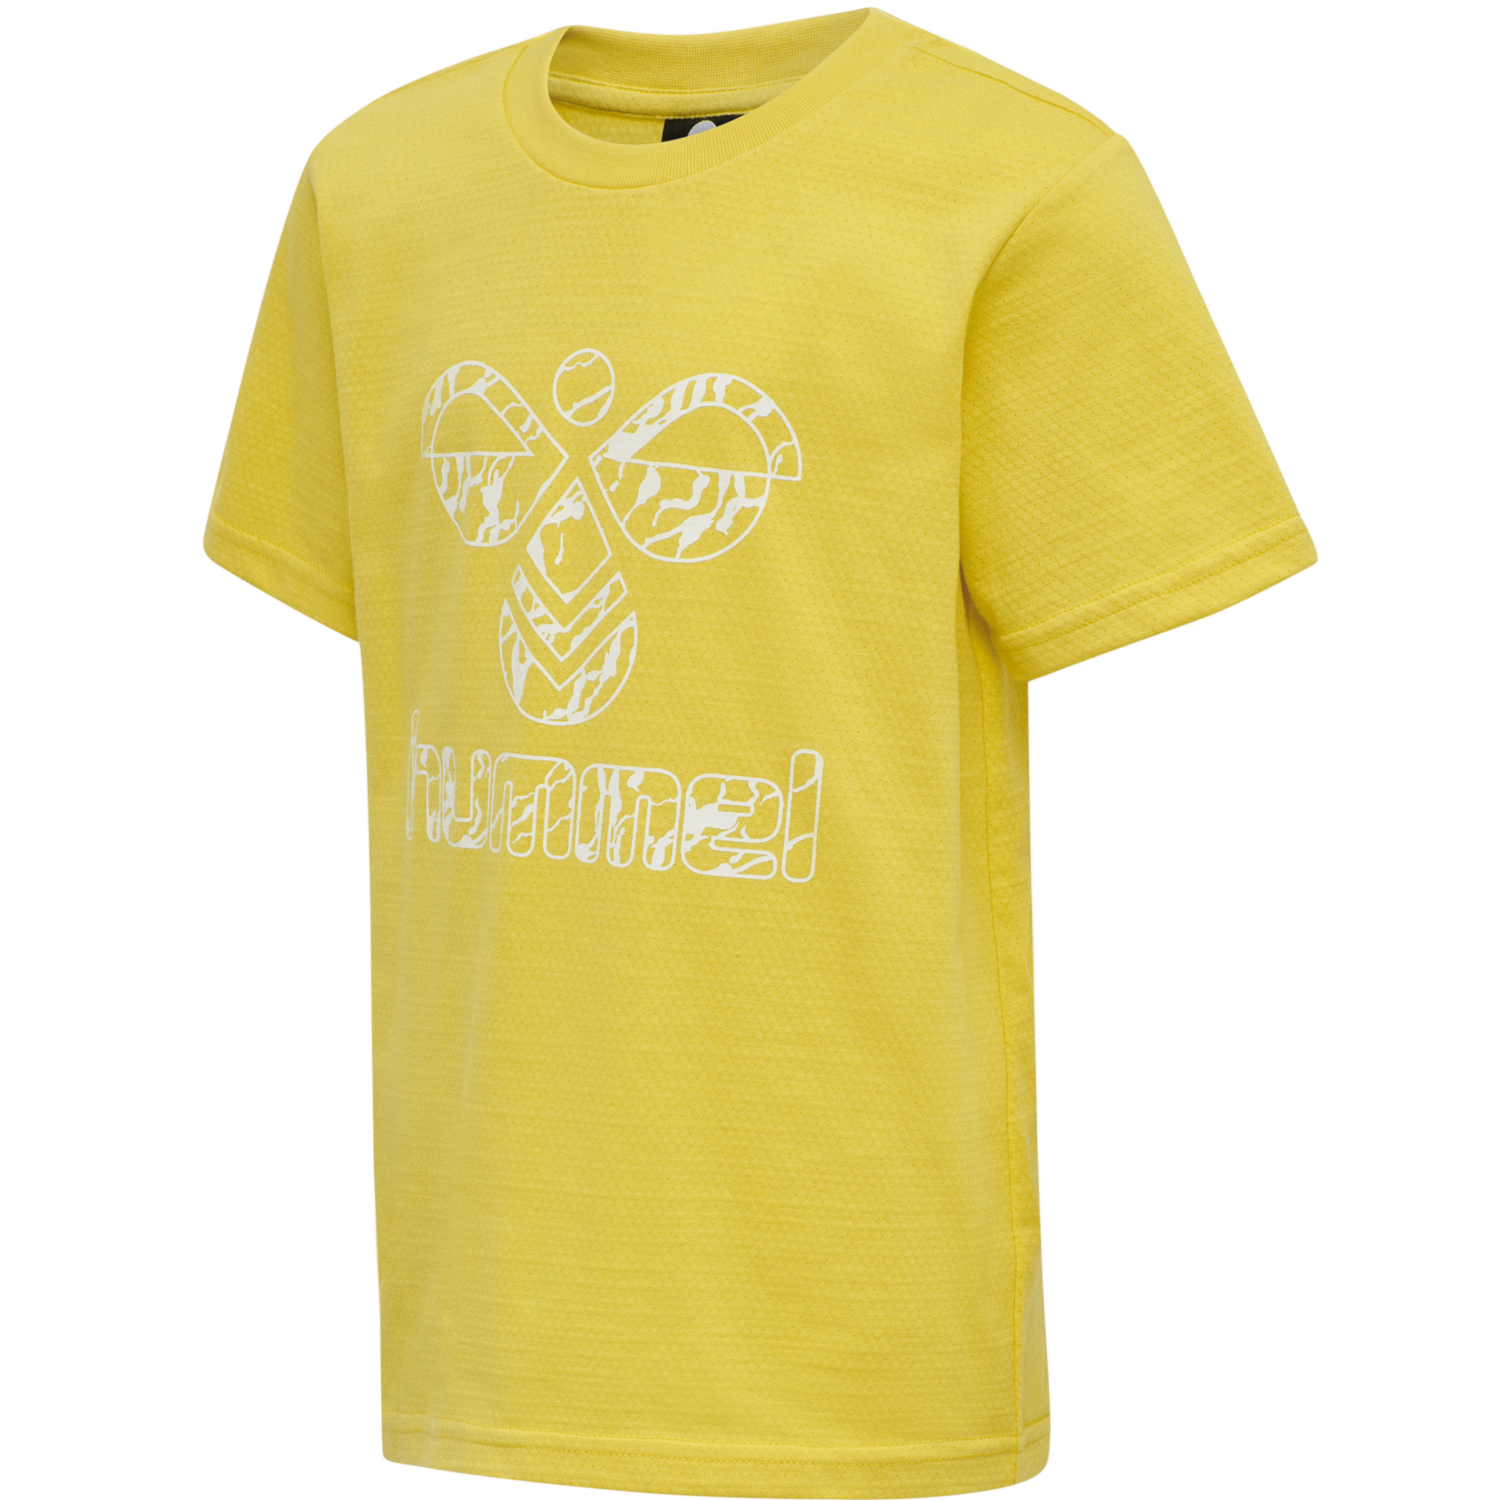 Gedrucktes gelbes T-Shirt PNG-Bildhintergrund